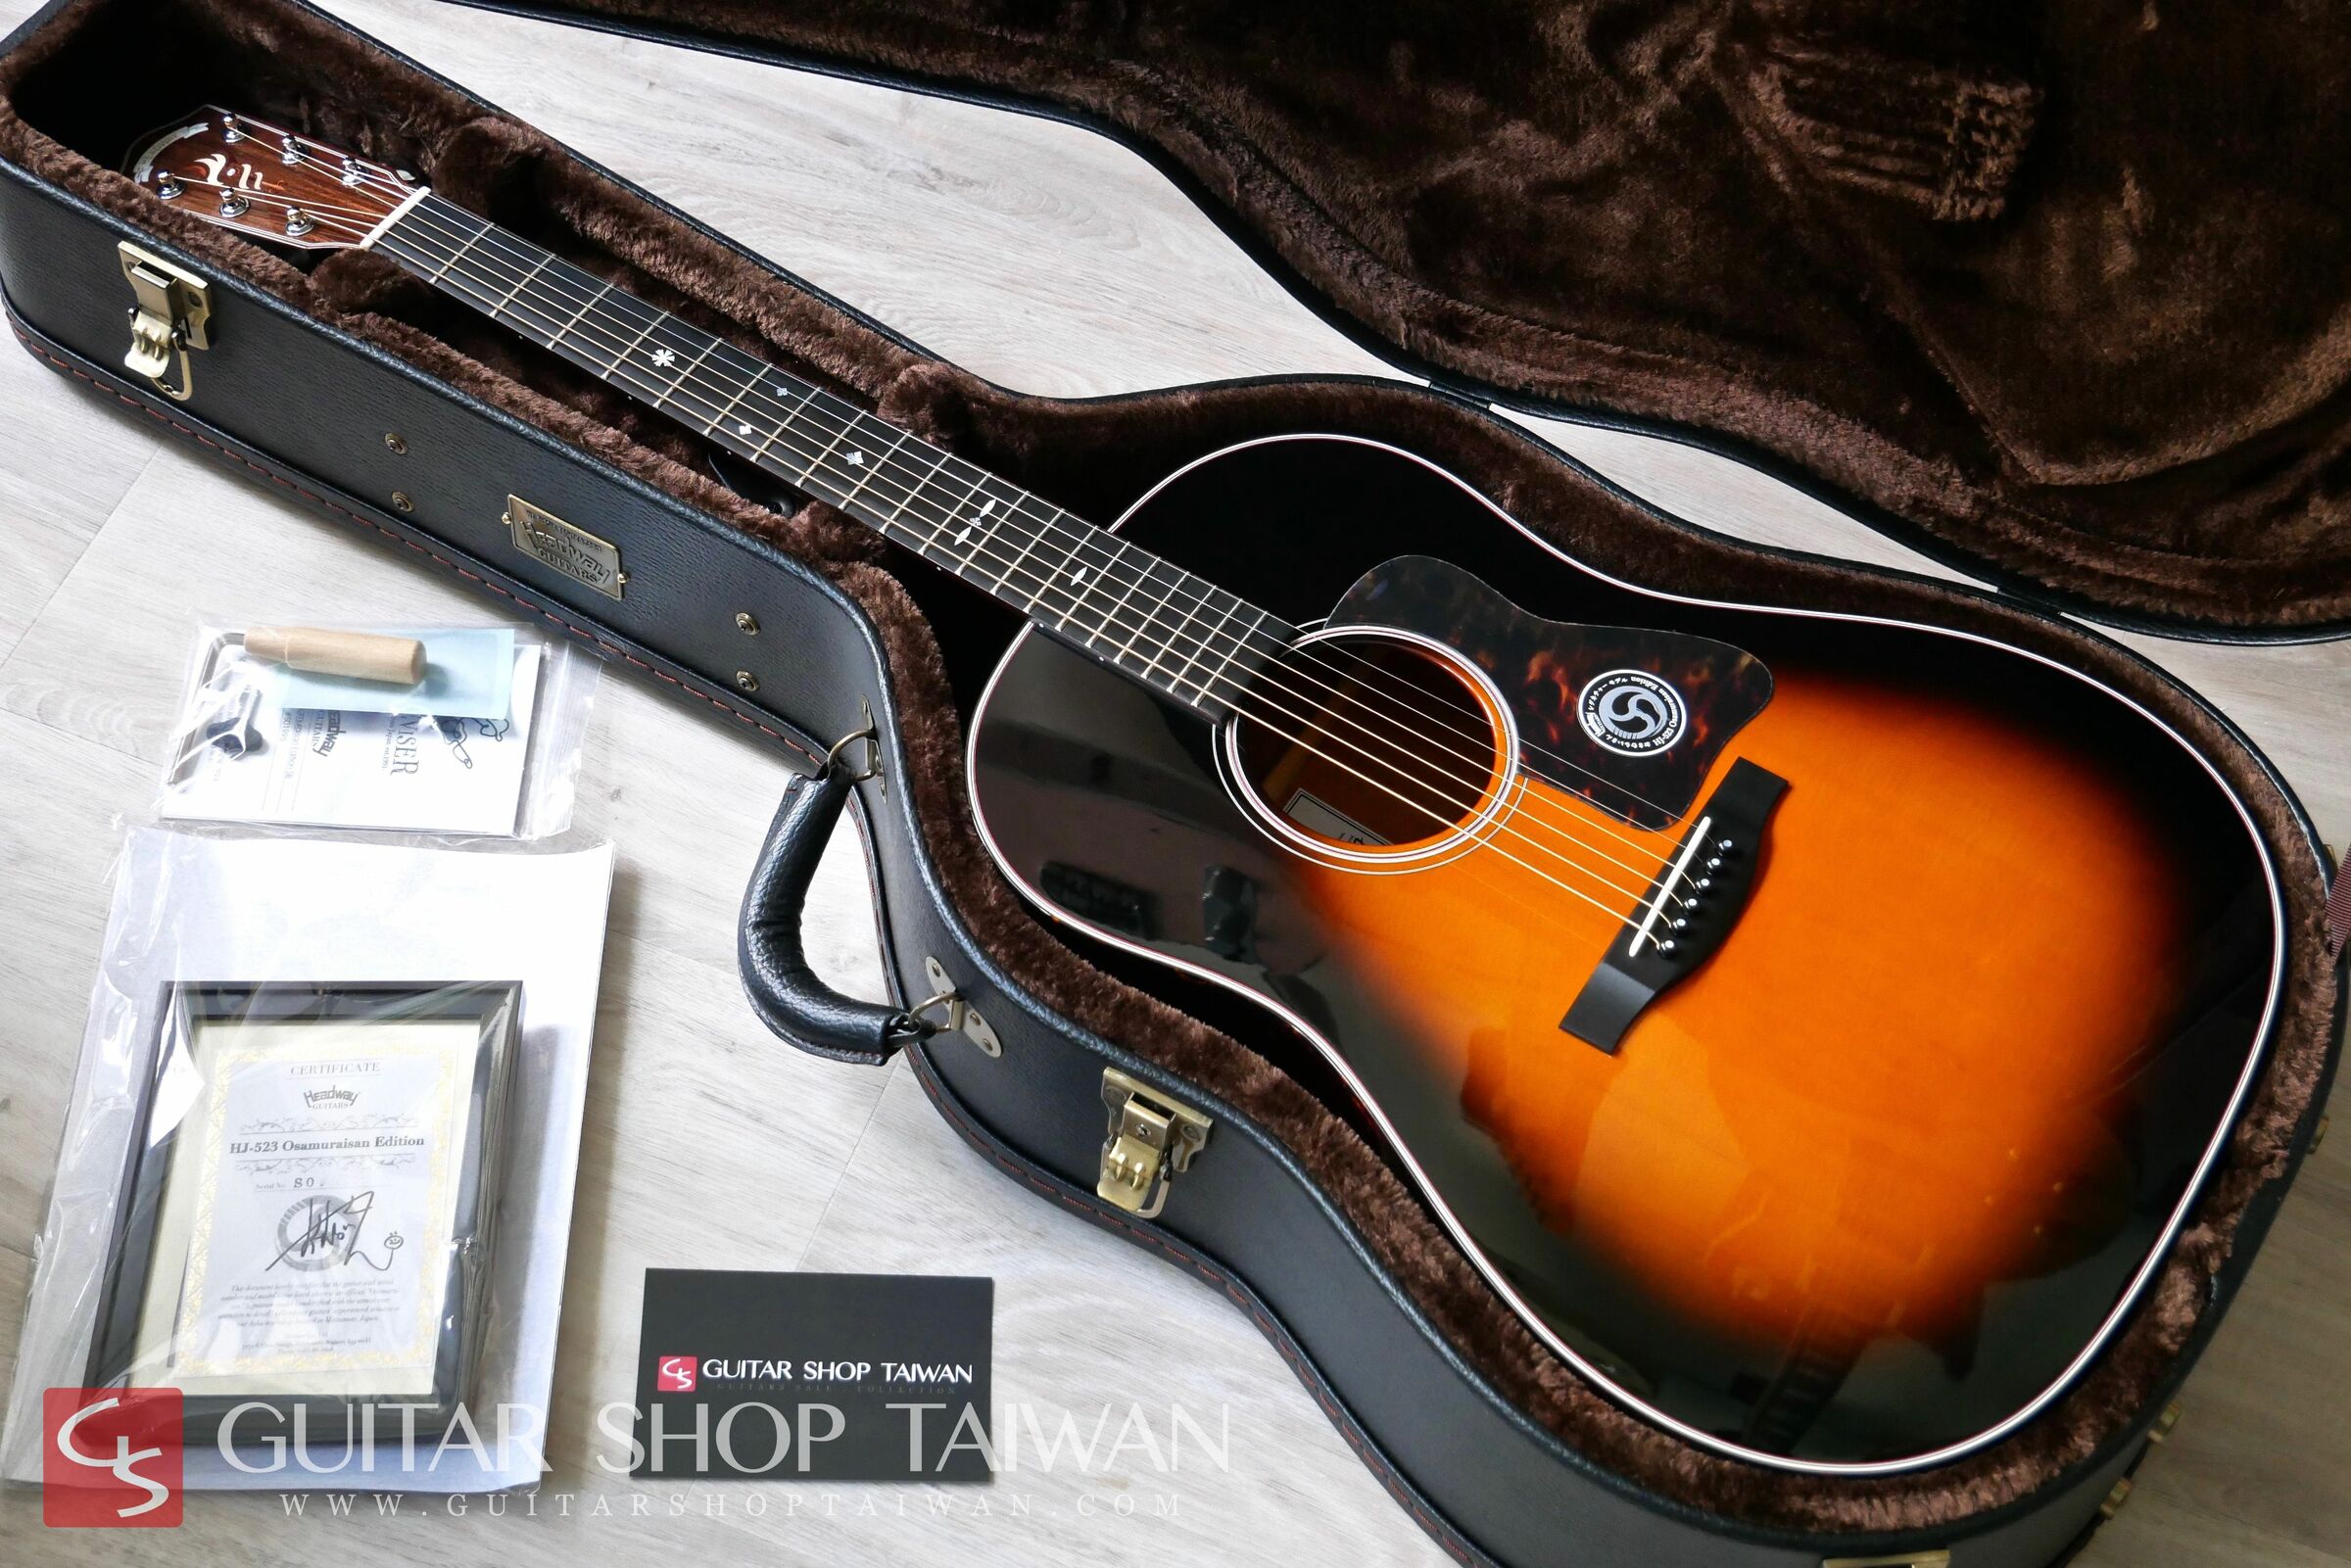 全新Headway HJ-523 Osamuraisan Edition Sunburst – Guitar Shop Taiwan